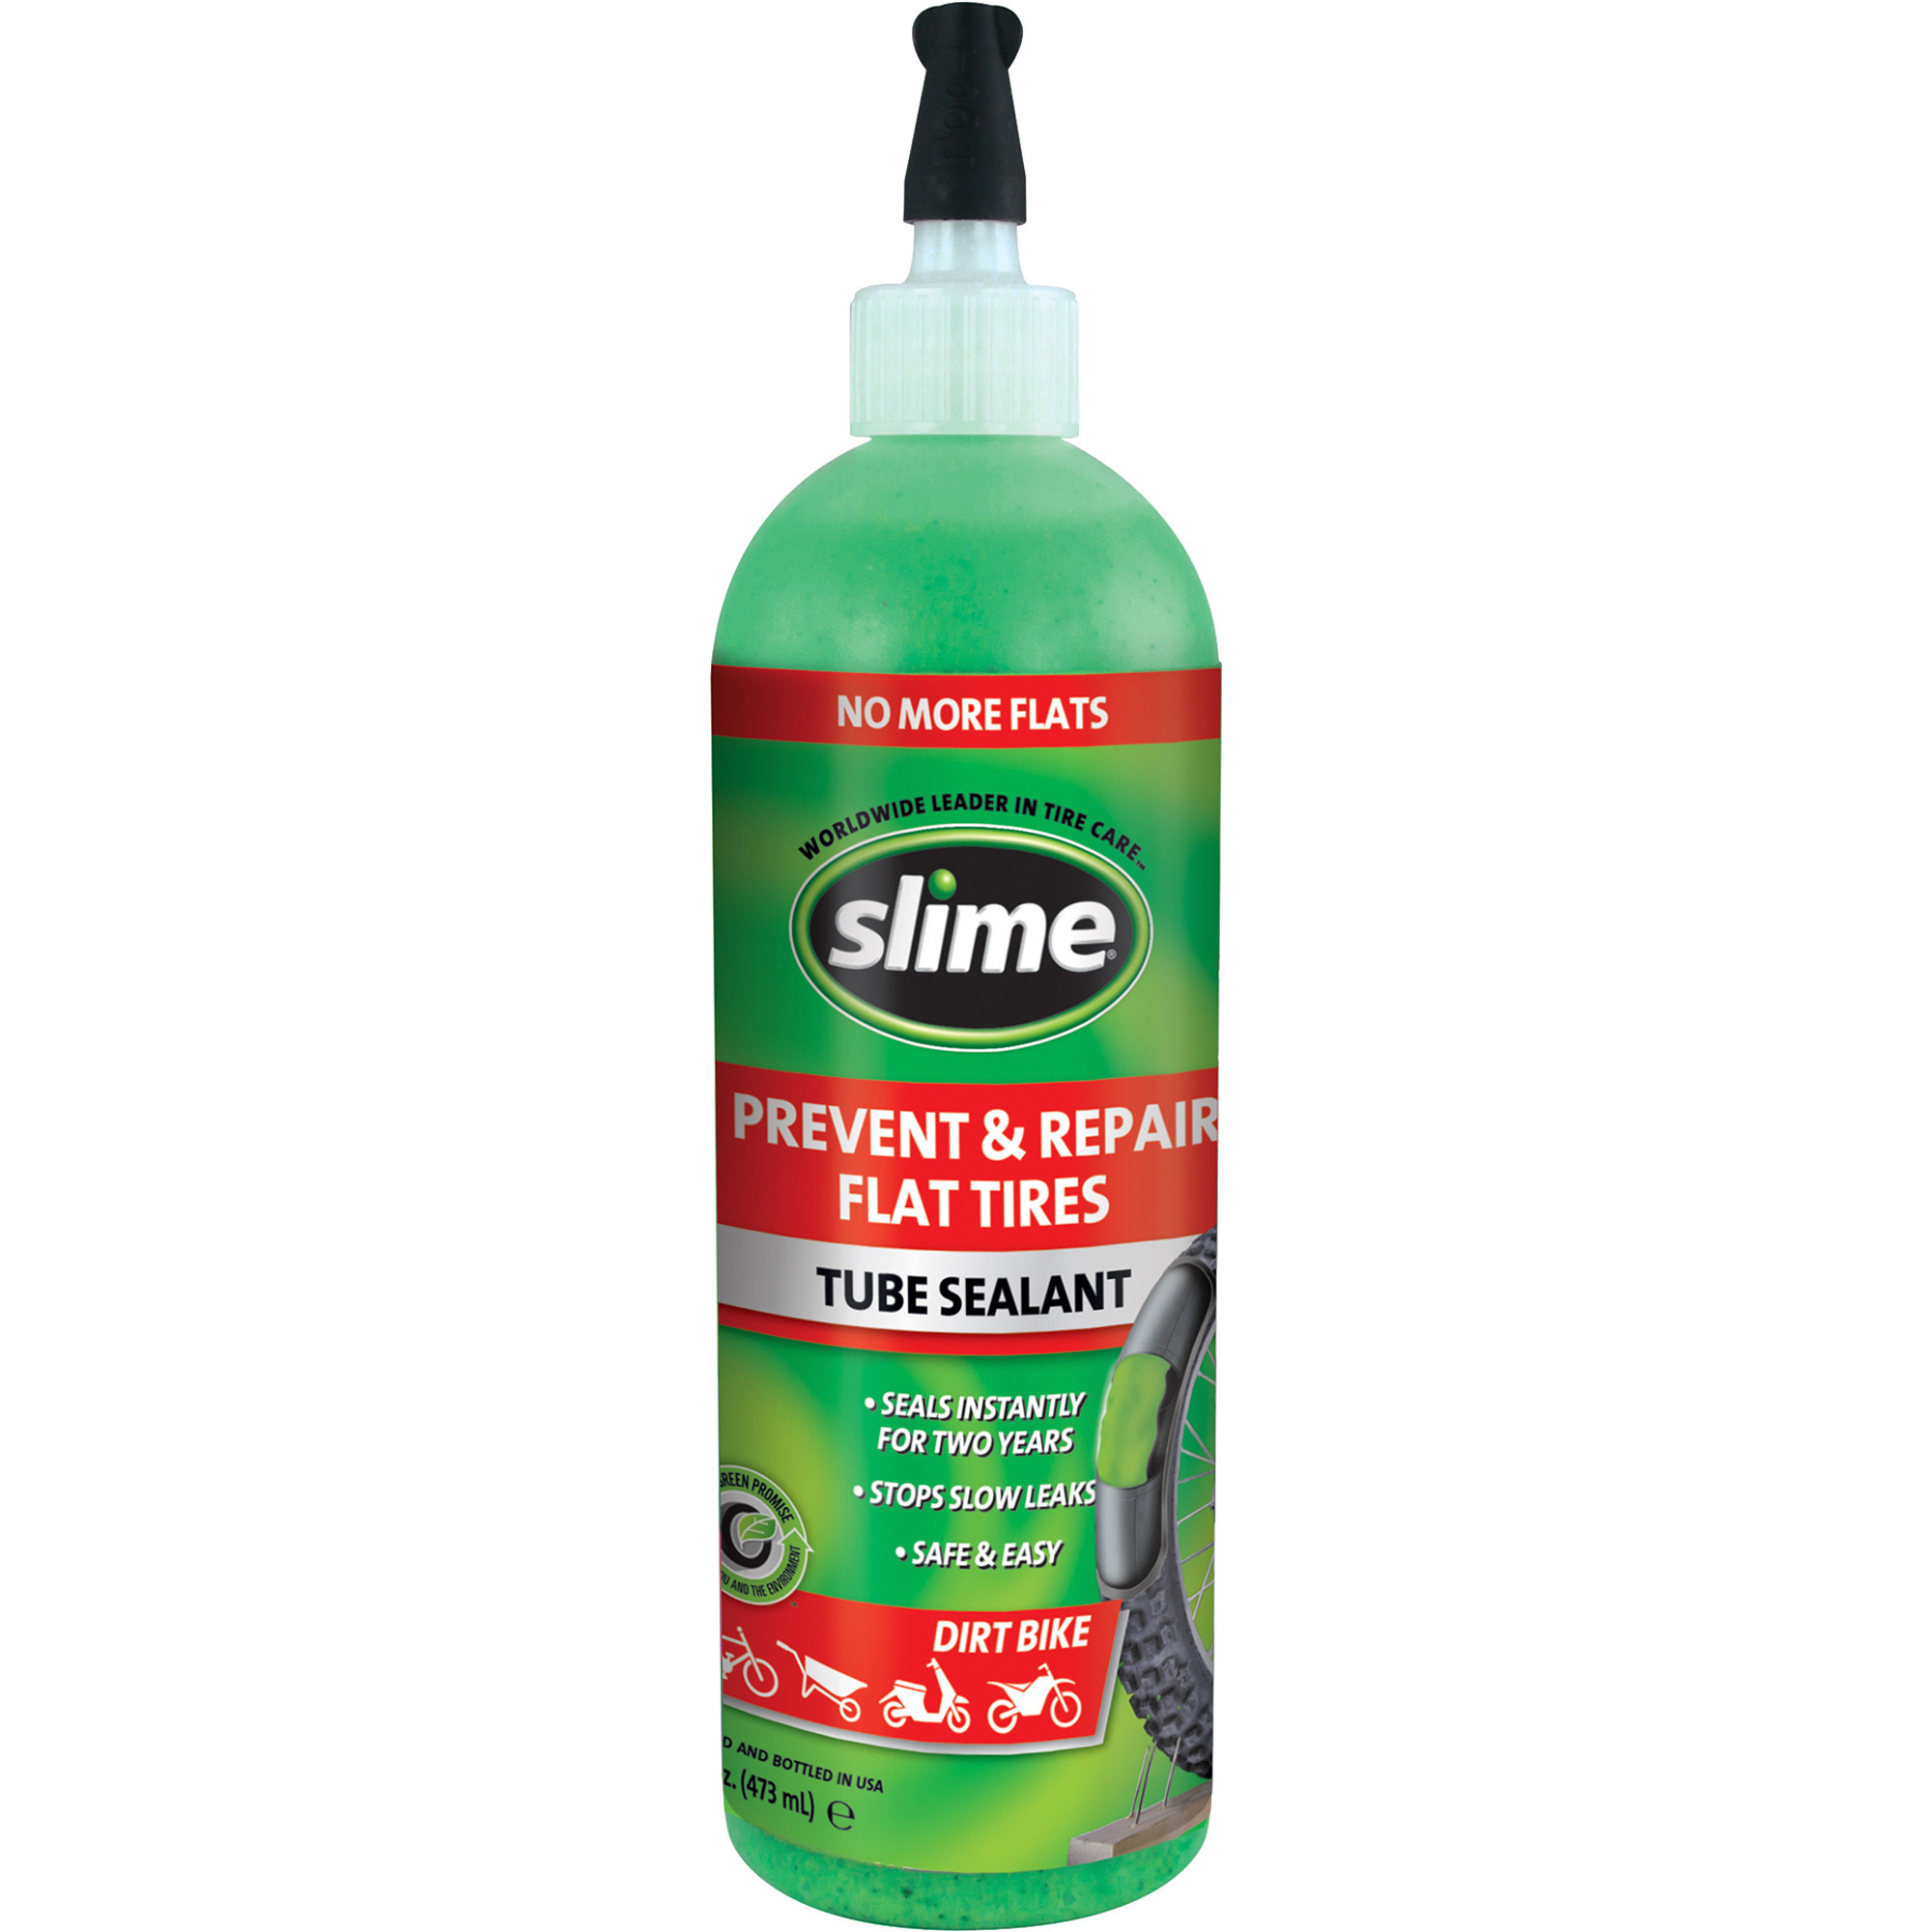 Slime Tube Sealant - 16 oz. (Dirt Bike)